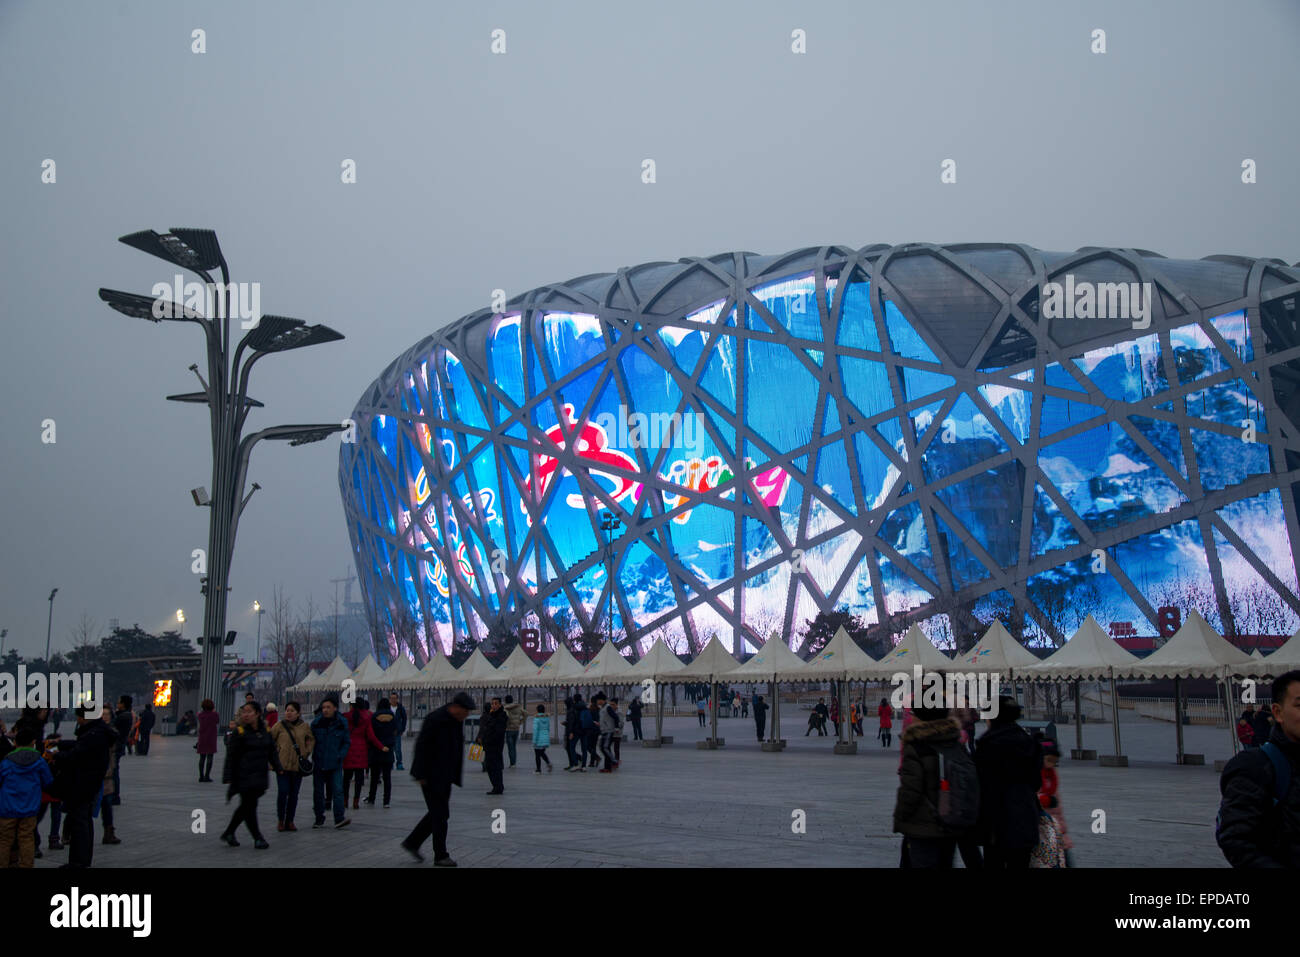 Le célèbre parc olympique à birdnest à Beijing Chine Banque D'Images